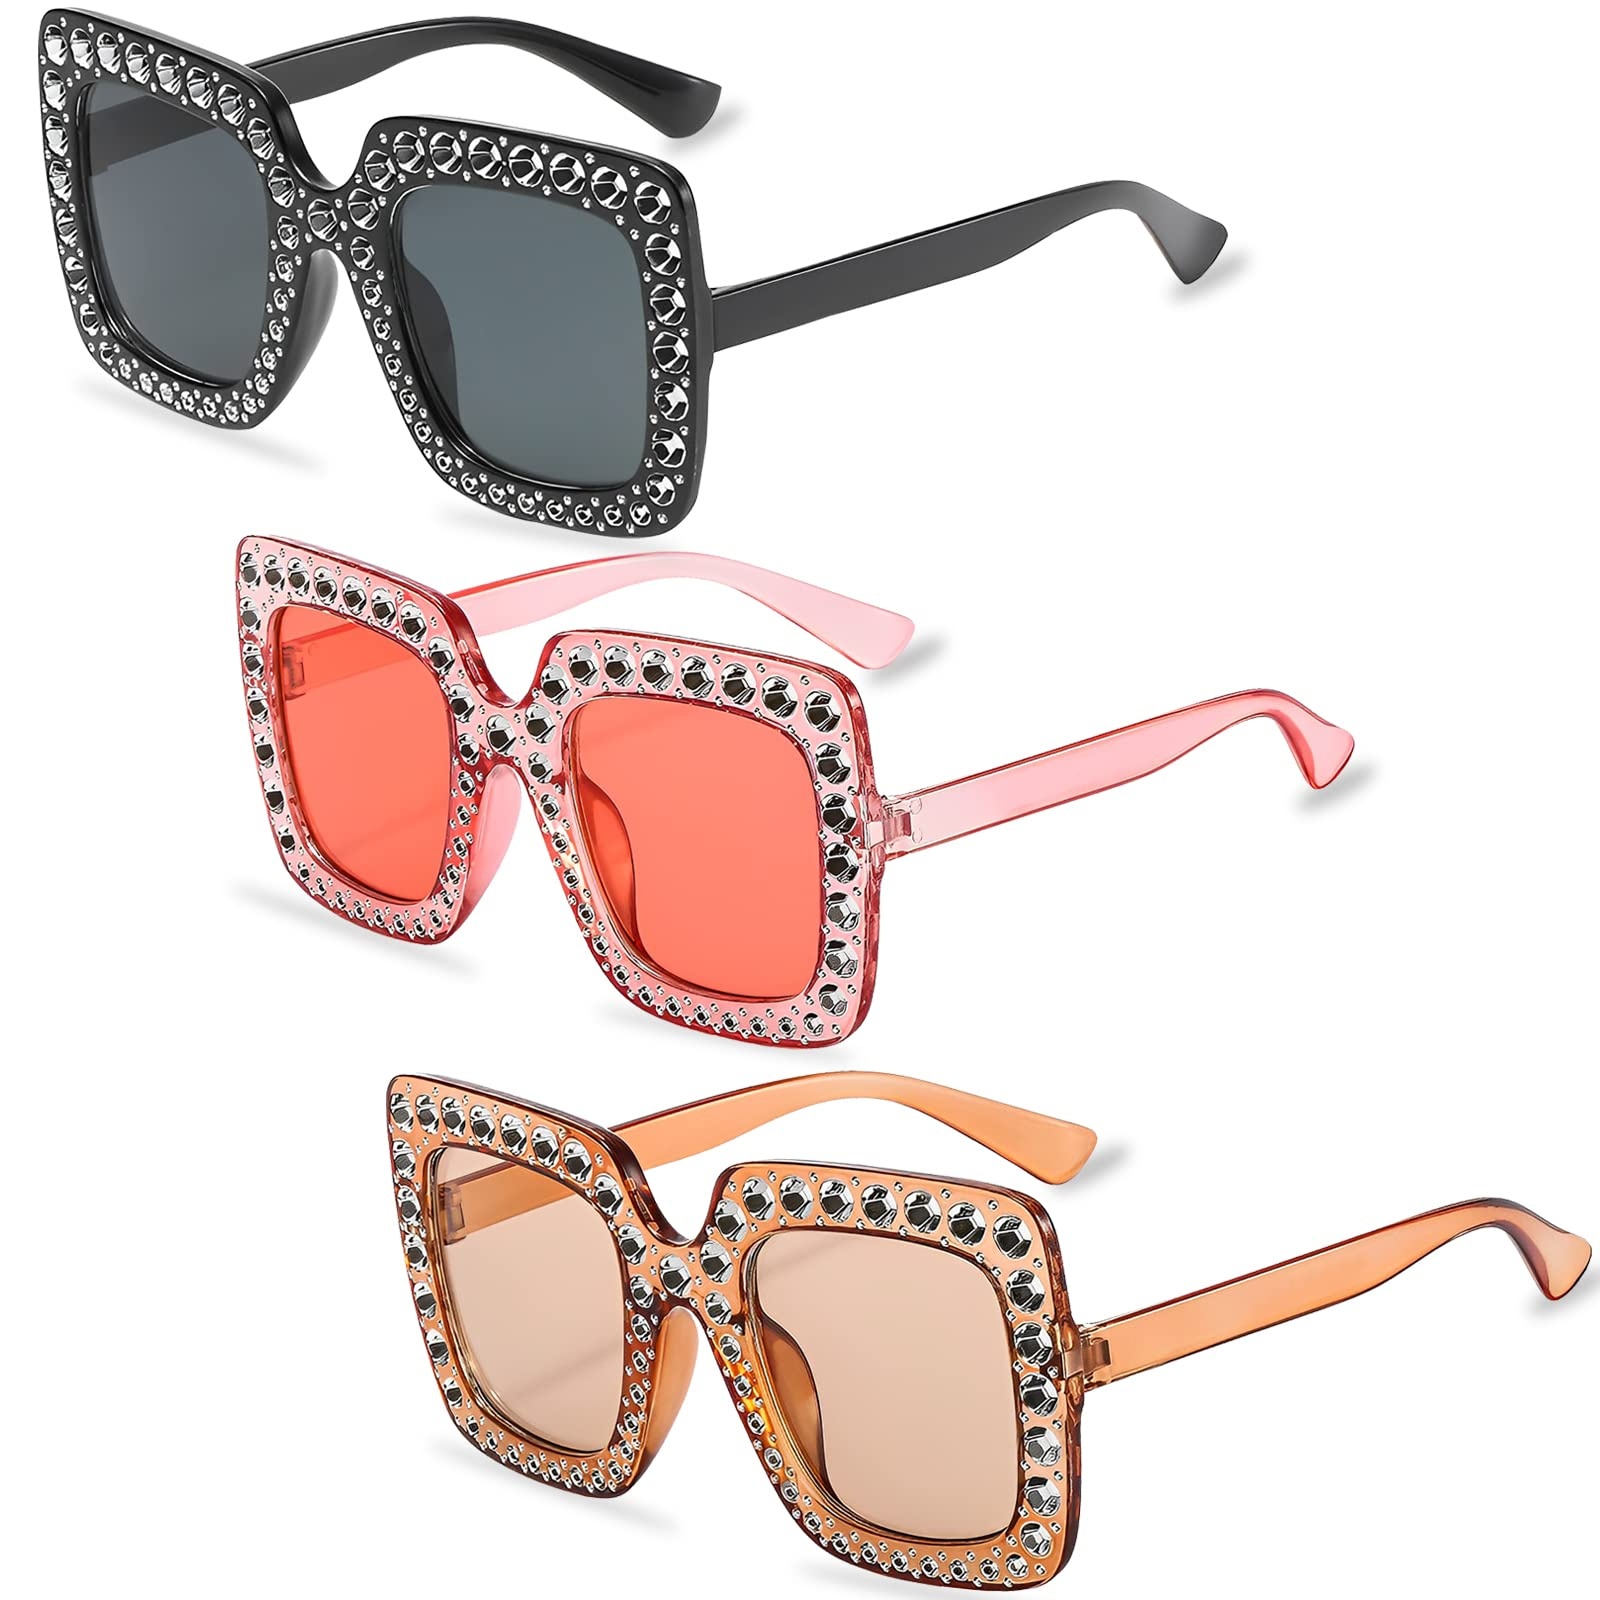 3 Stück Vintage Rechteckige Sonnenbrille, Unisex Trendige Retro Brille mit Großer Rahmen Sonnenbrille für Damen Herren Einkaufen Reisen Sommer Strand Party Zubehör - Einheitsgröße